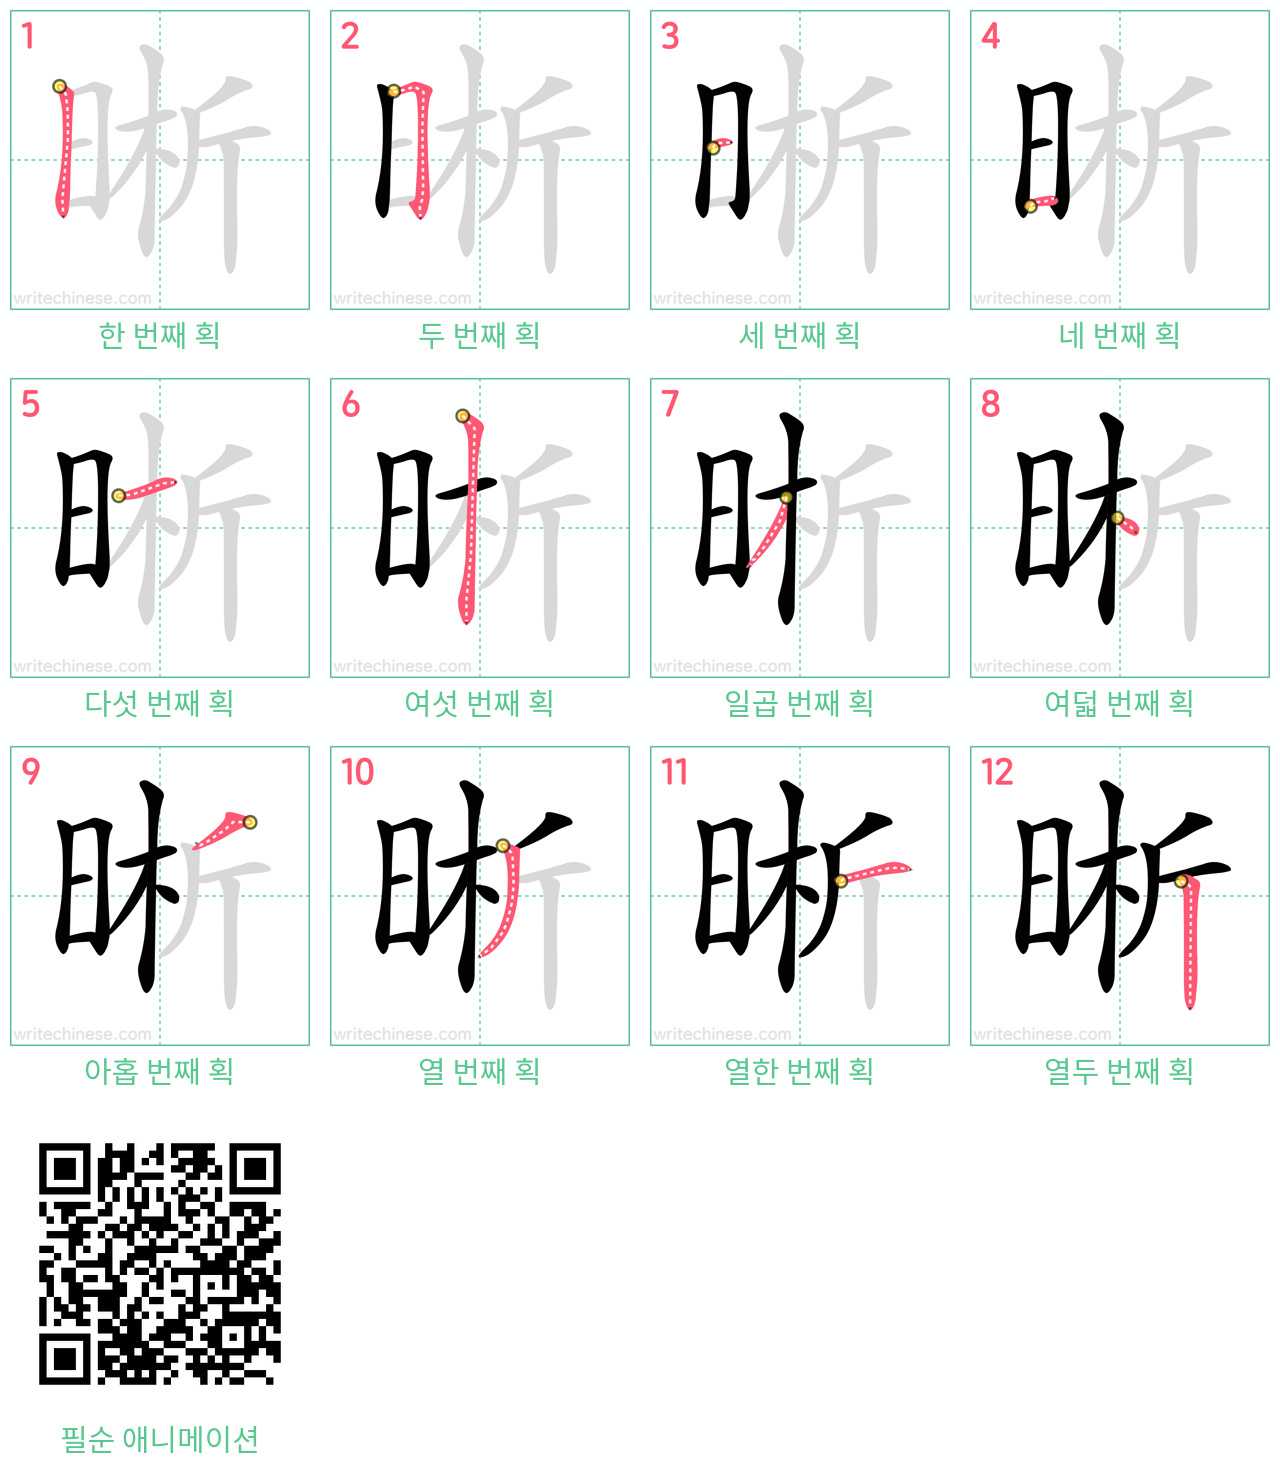 晰 step-by-step stroke order diagrams